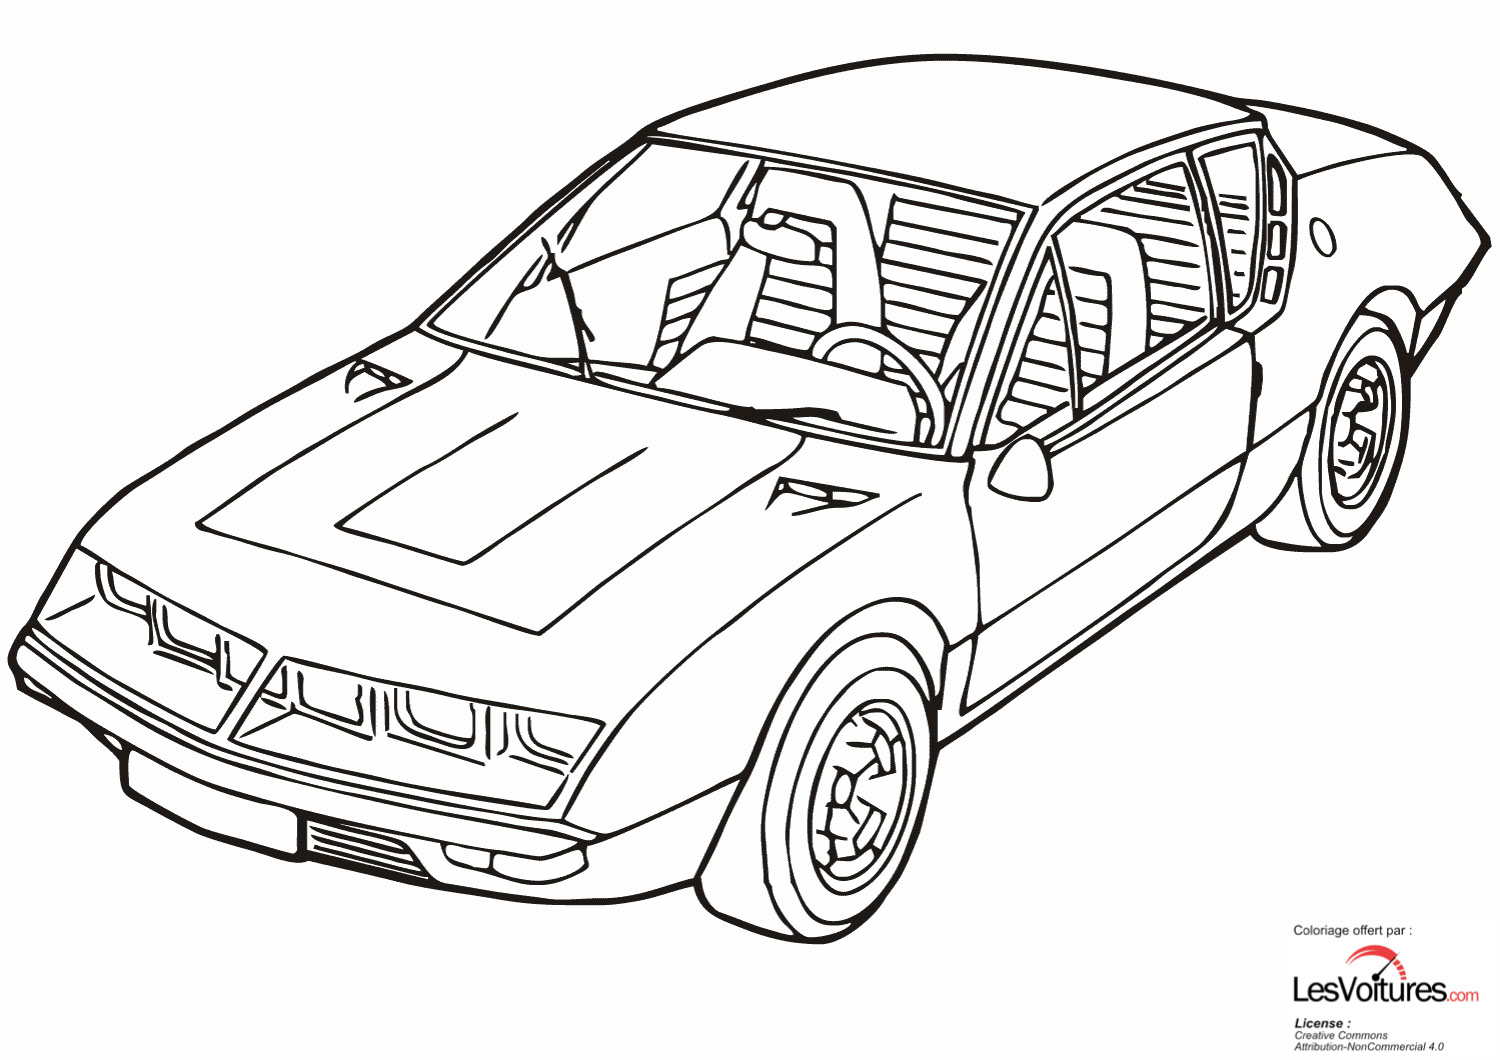 renault-alpine-a310-coloriage-voiture | Les Voitures